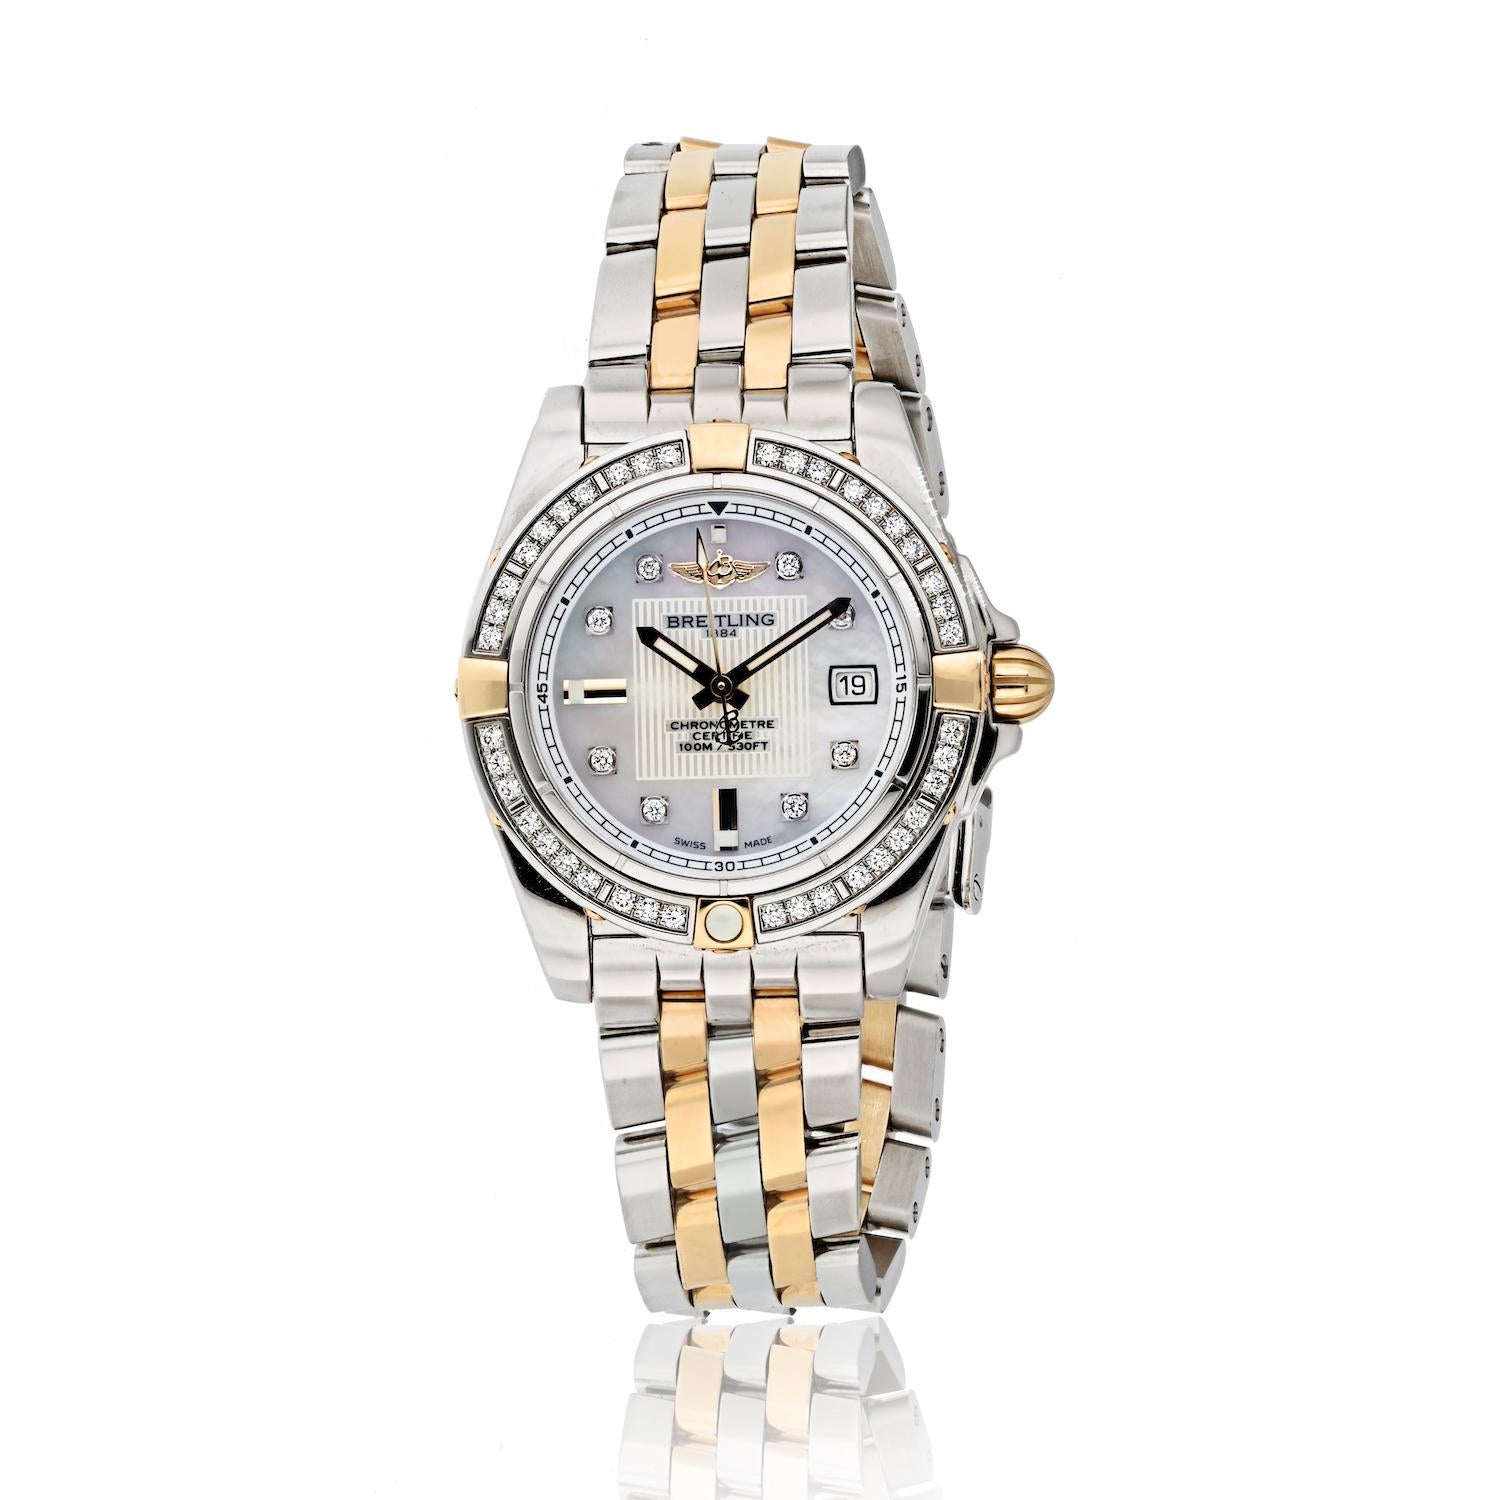 Erhöhen Sie Ihren Stil mit der exquisiten Breitling Starliner Mother of Pearl Diamond 32mm Bezel Watch, einem Zeitmesser, der Luxus und Präzision nahtlos miteinander verbindet. Diese atemberaubende Damenarmbanduhr ist ein wahres Schmuckstück, das